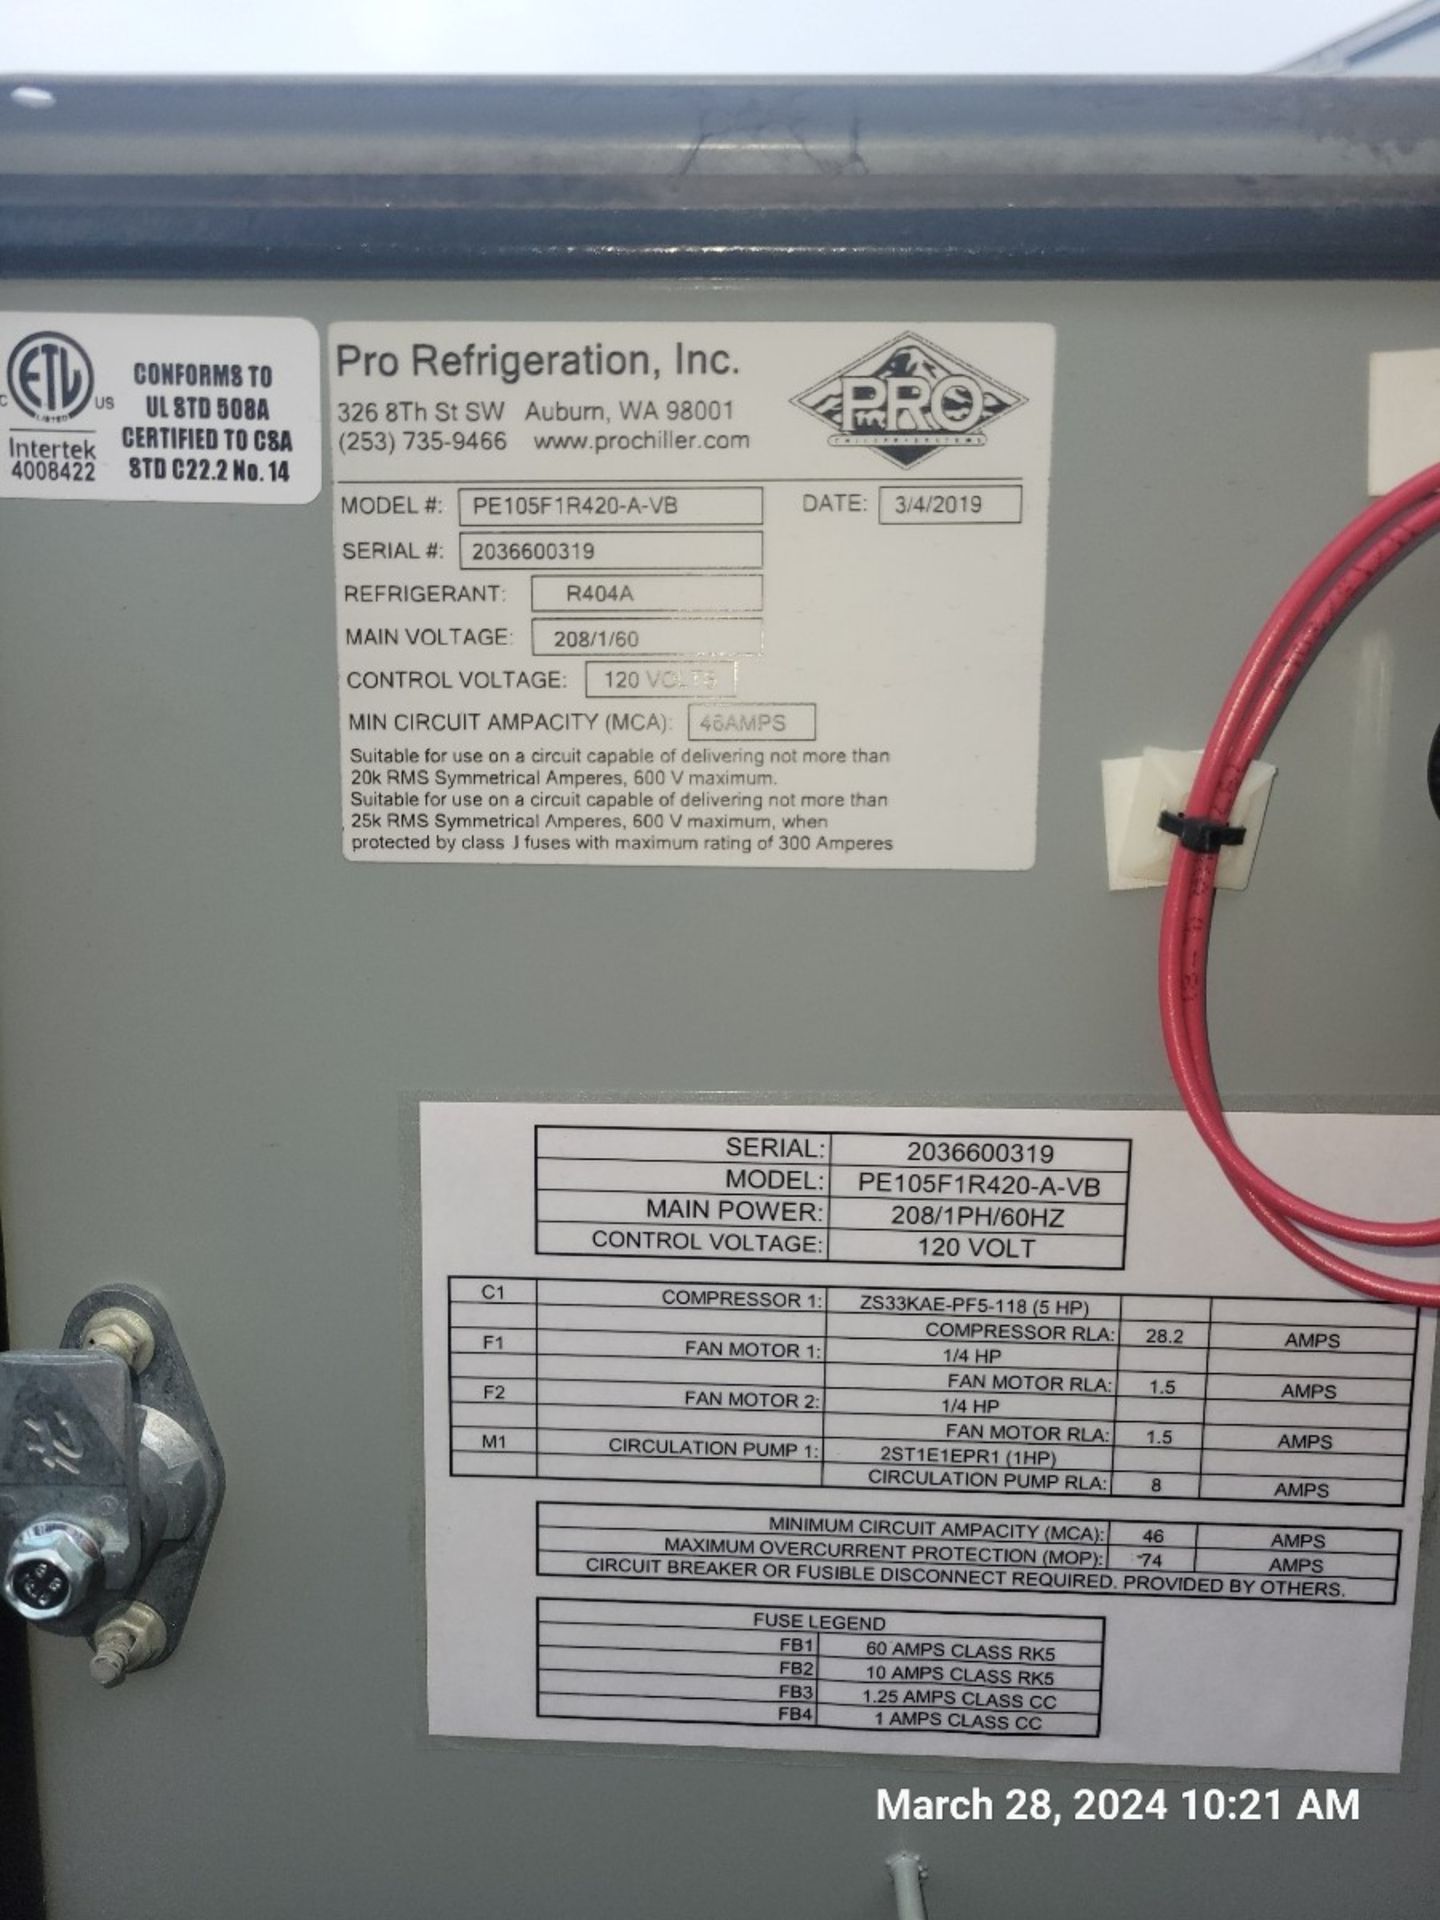 2019 Pro Chilstar Series Refrigeration Chiller Model: PE105F1R420-A-VB, 208V, 60Hz, Refrig: R404A - Image 5 of 5